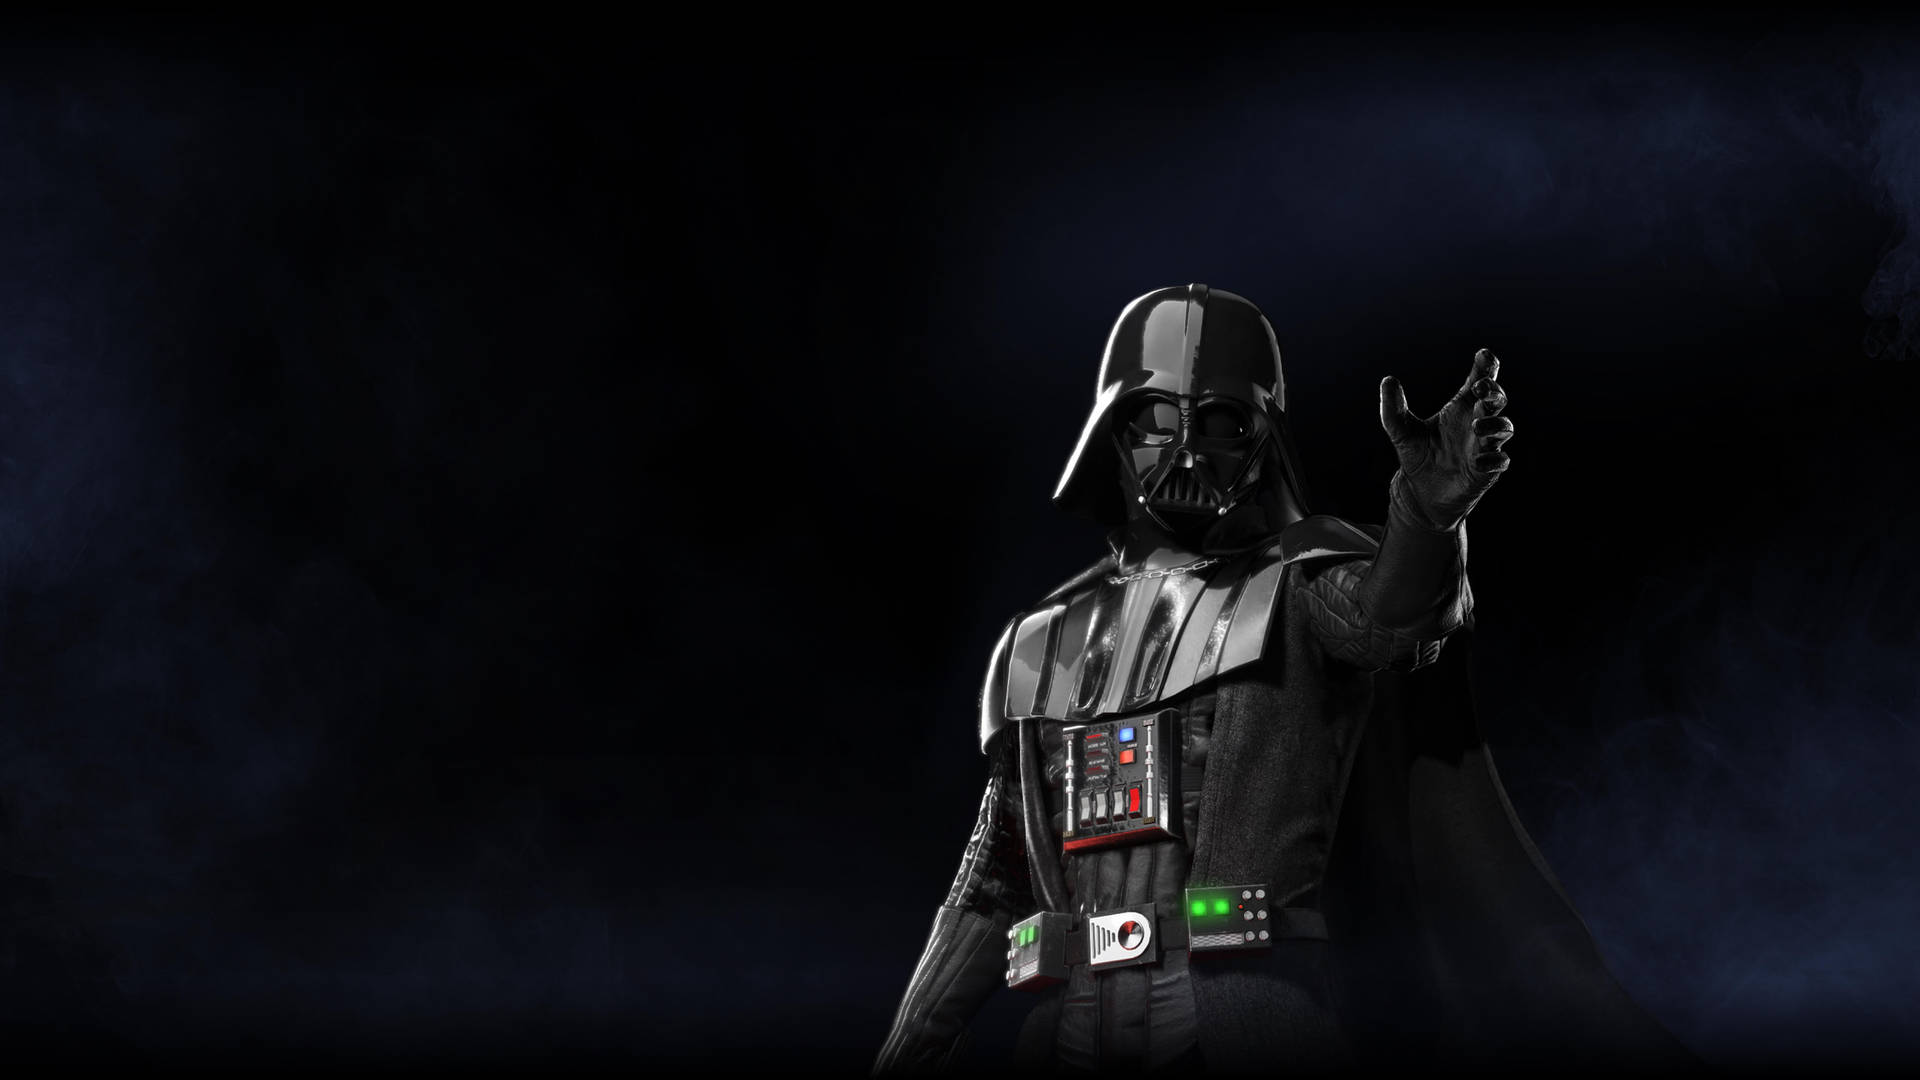 4kstar Wars Battlefront 2 Vader Blir En Fantastisk Bakgrundsbild För Din Dator Eller Mobiltelefon. Wallpaper